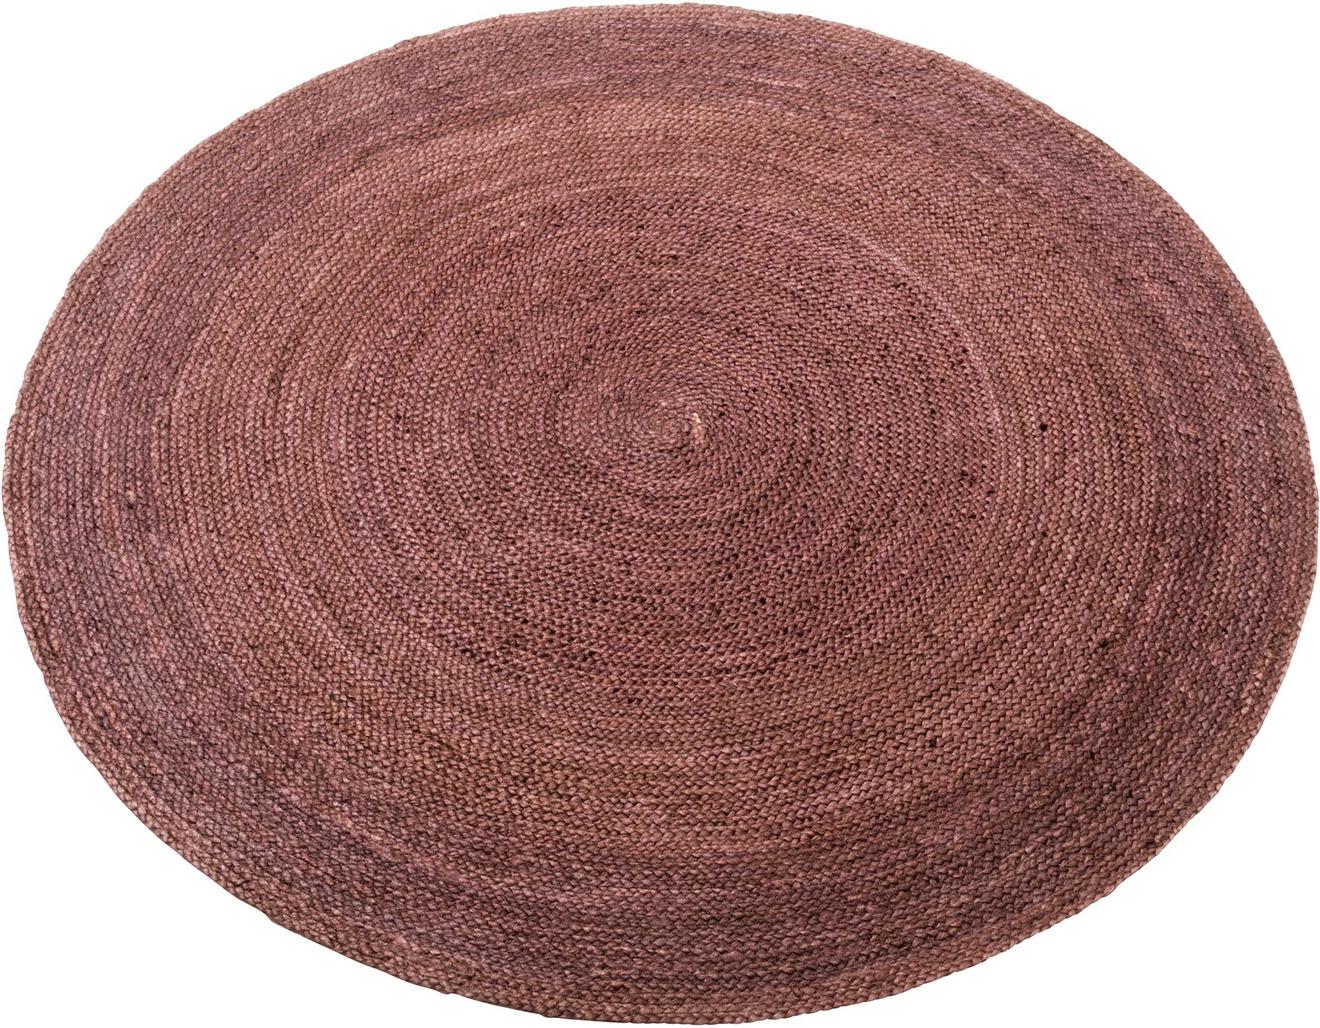 Kallio juuttimatto pyöreä ⌀ 160 cm, ruskea tuote hintaan 69€ liikkeestä MASKU